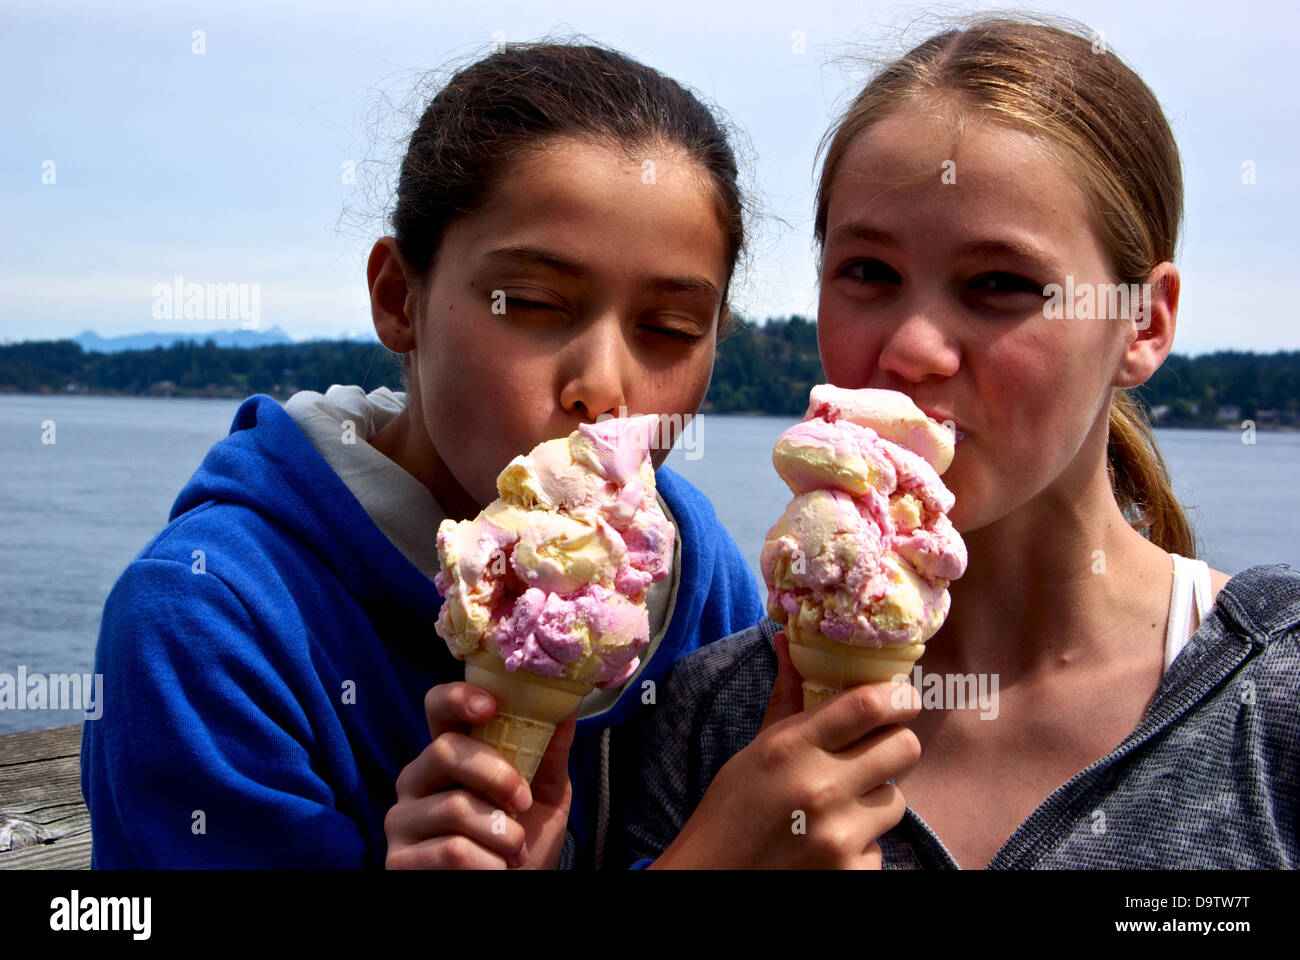 Deux jolies jeunes filles de l'autre dégustation d'énormes cornets Campbell River BC Canada Découverte quai de pêche Banque D'Images